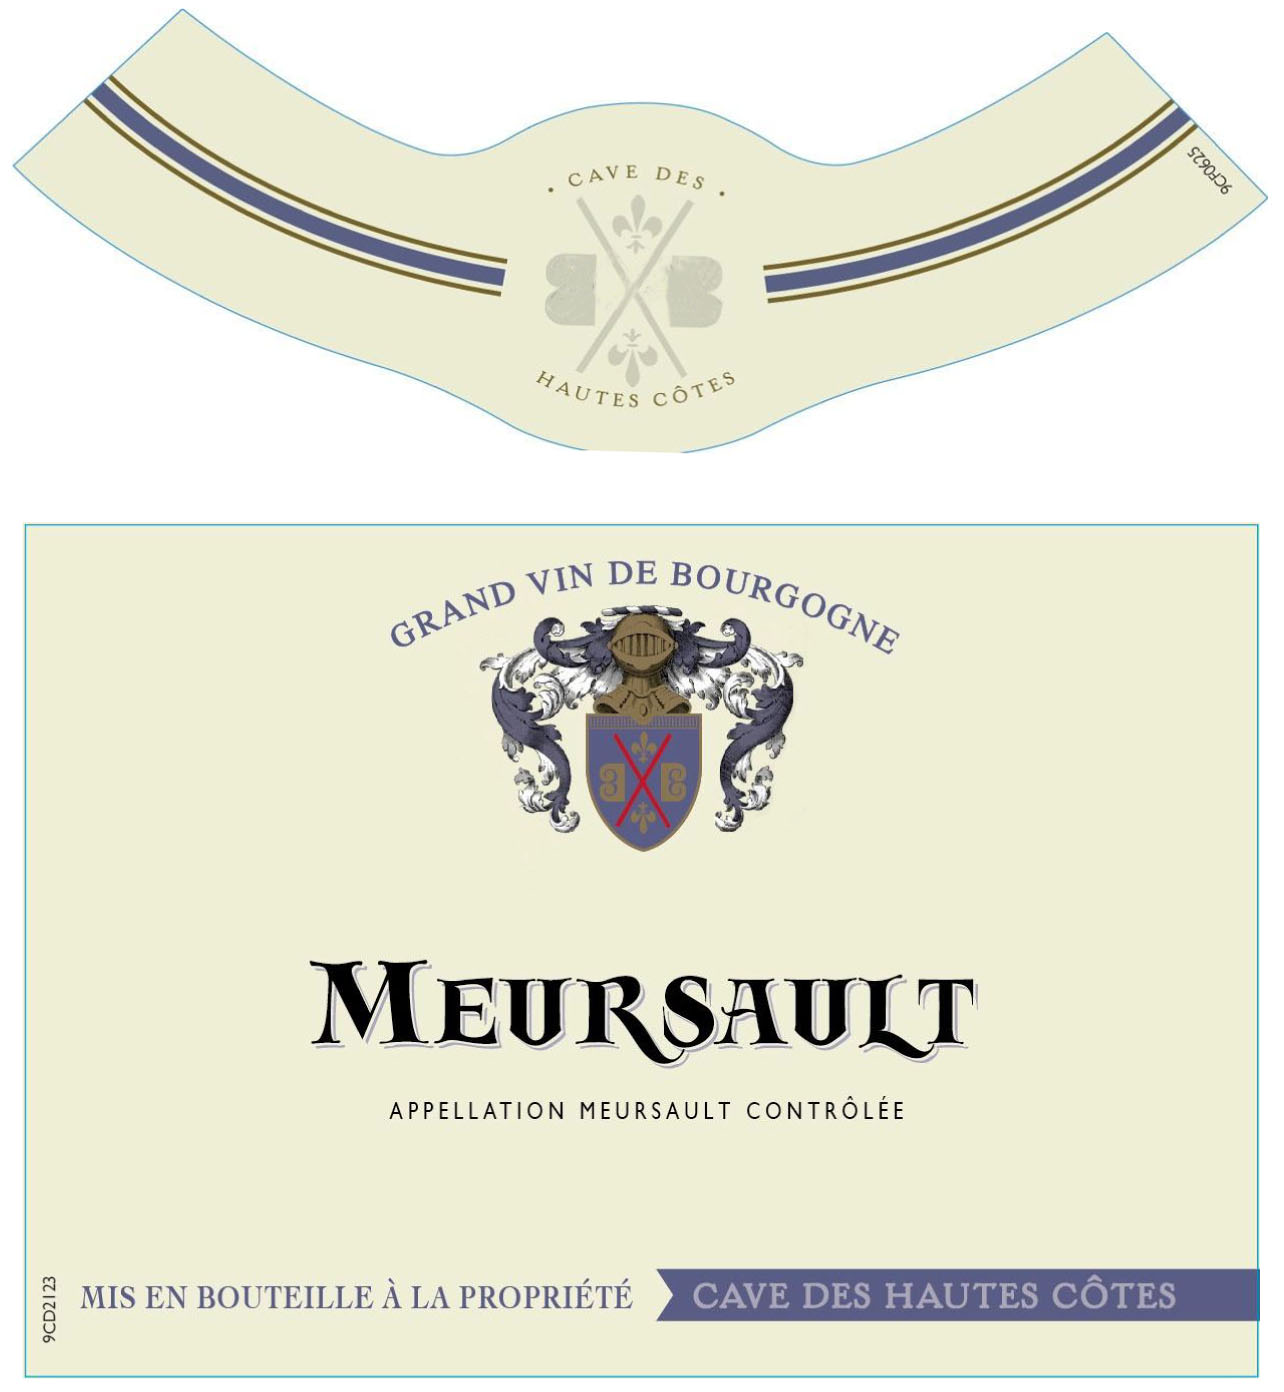 Cave des Hautes Côtes - Meursault label